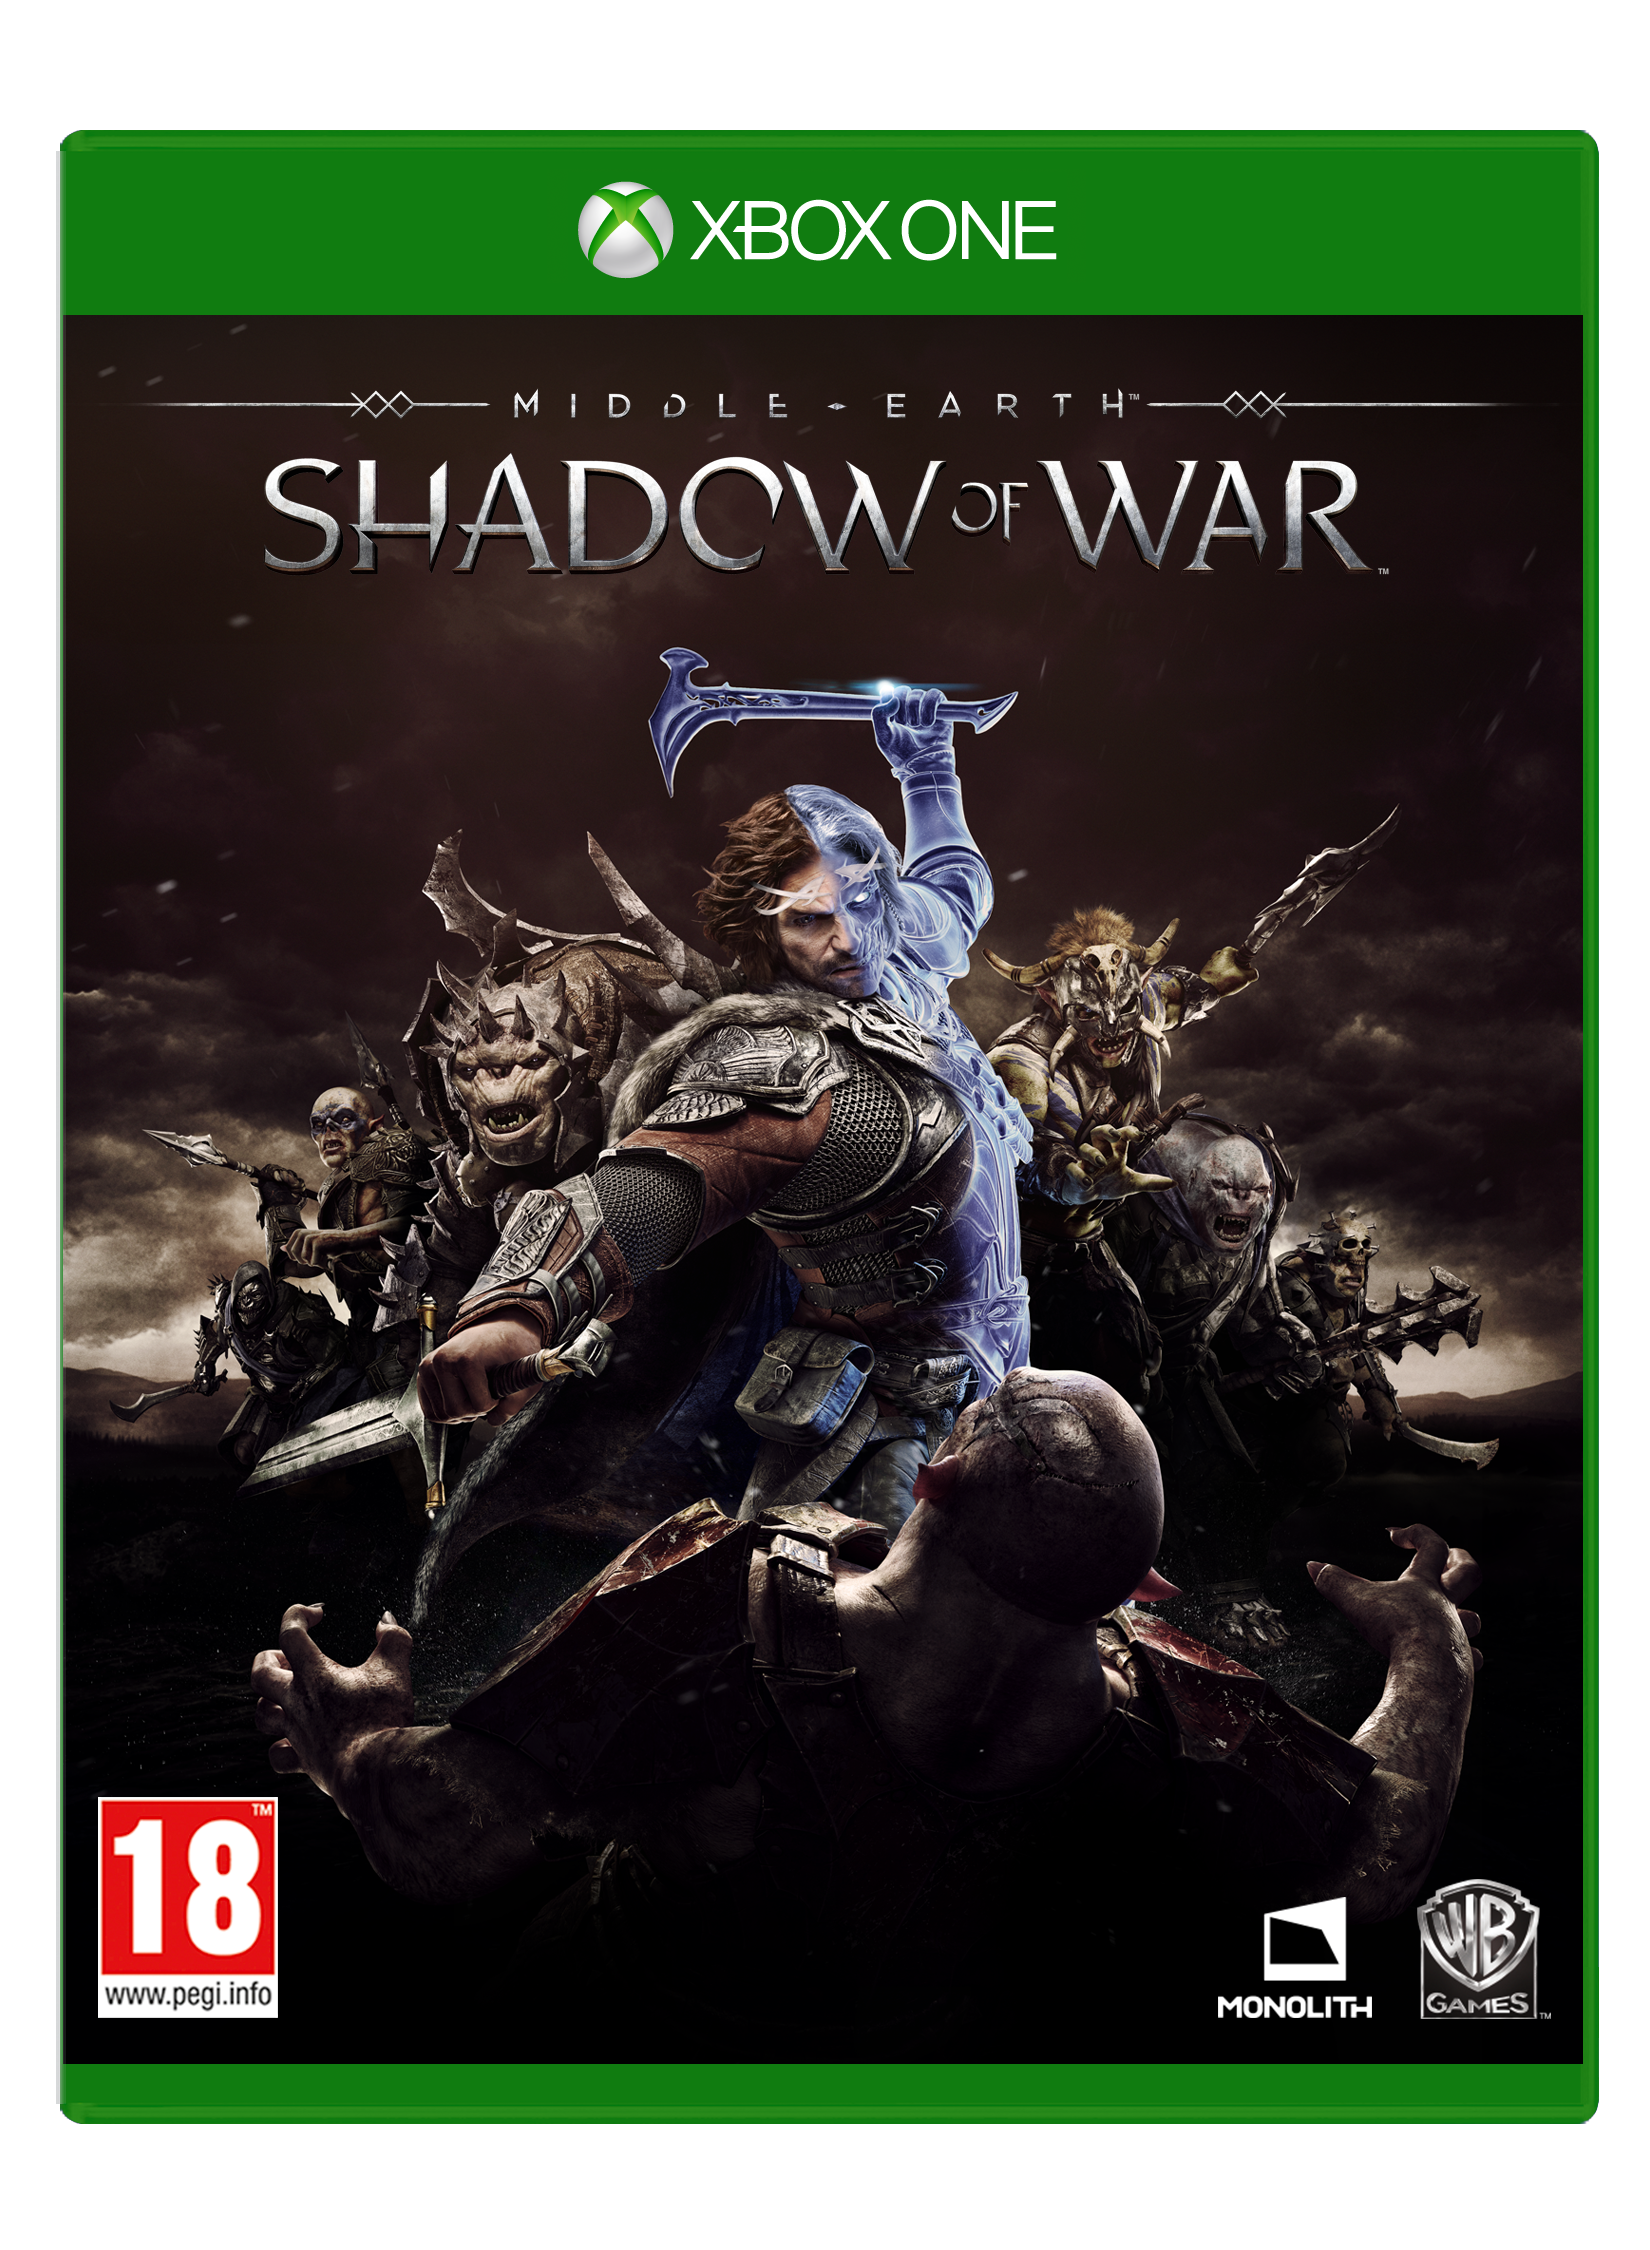 Middle-Earth: Shadow of War von Warner